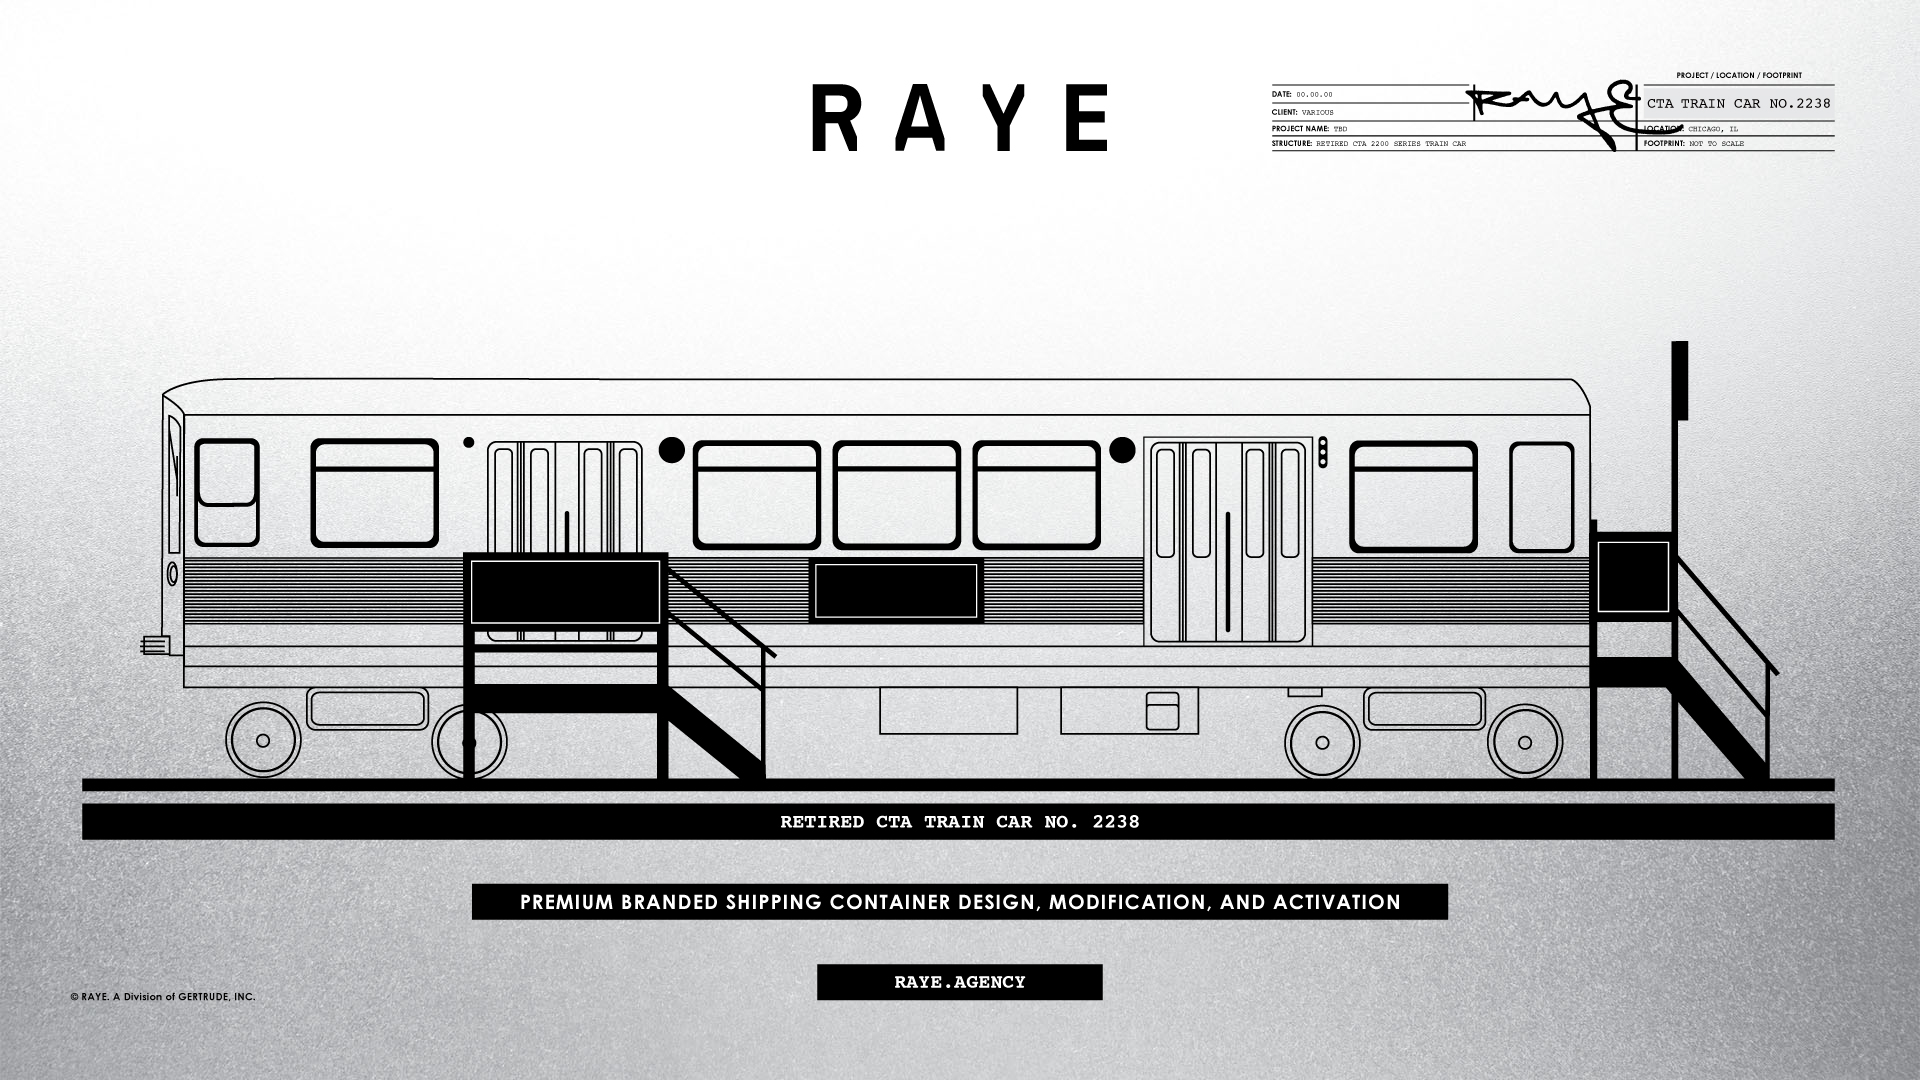 Gertrude Raye Branded CTA Train Car 2238 Design Modification Schematic